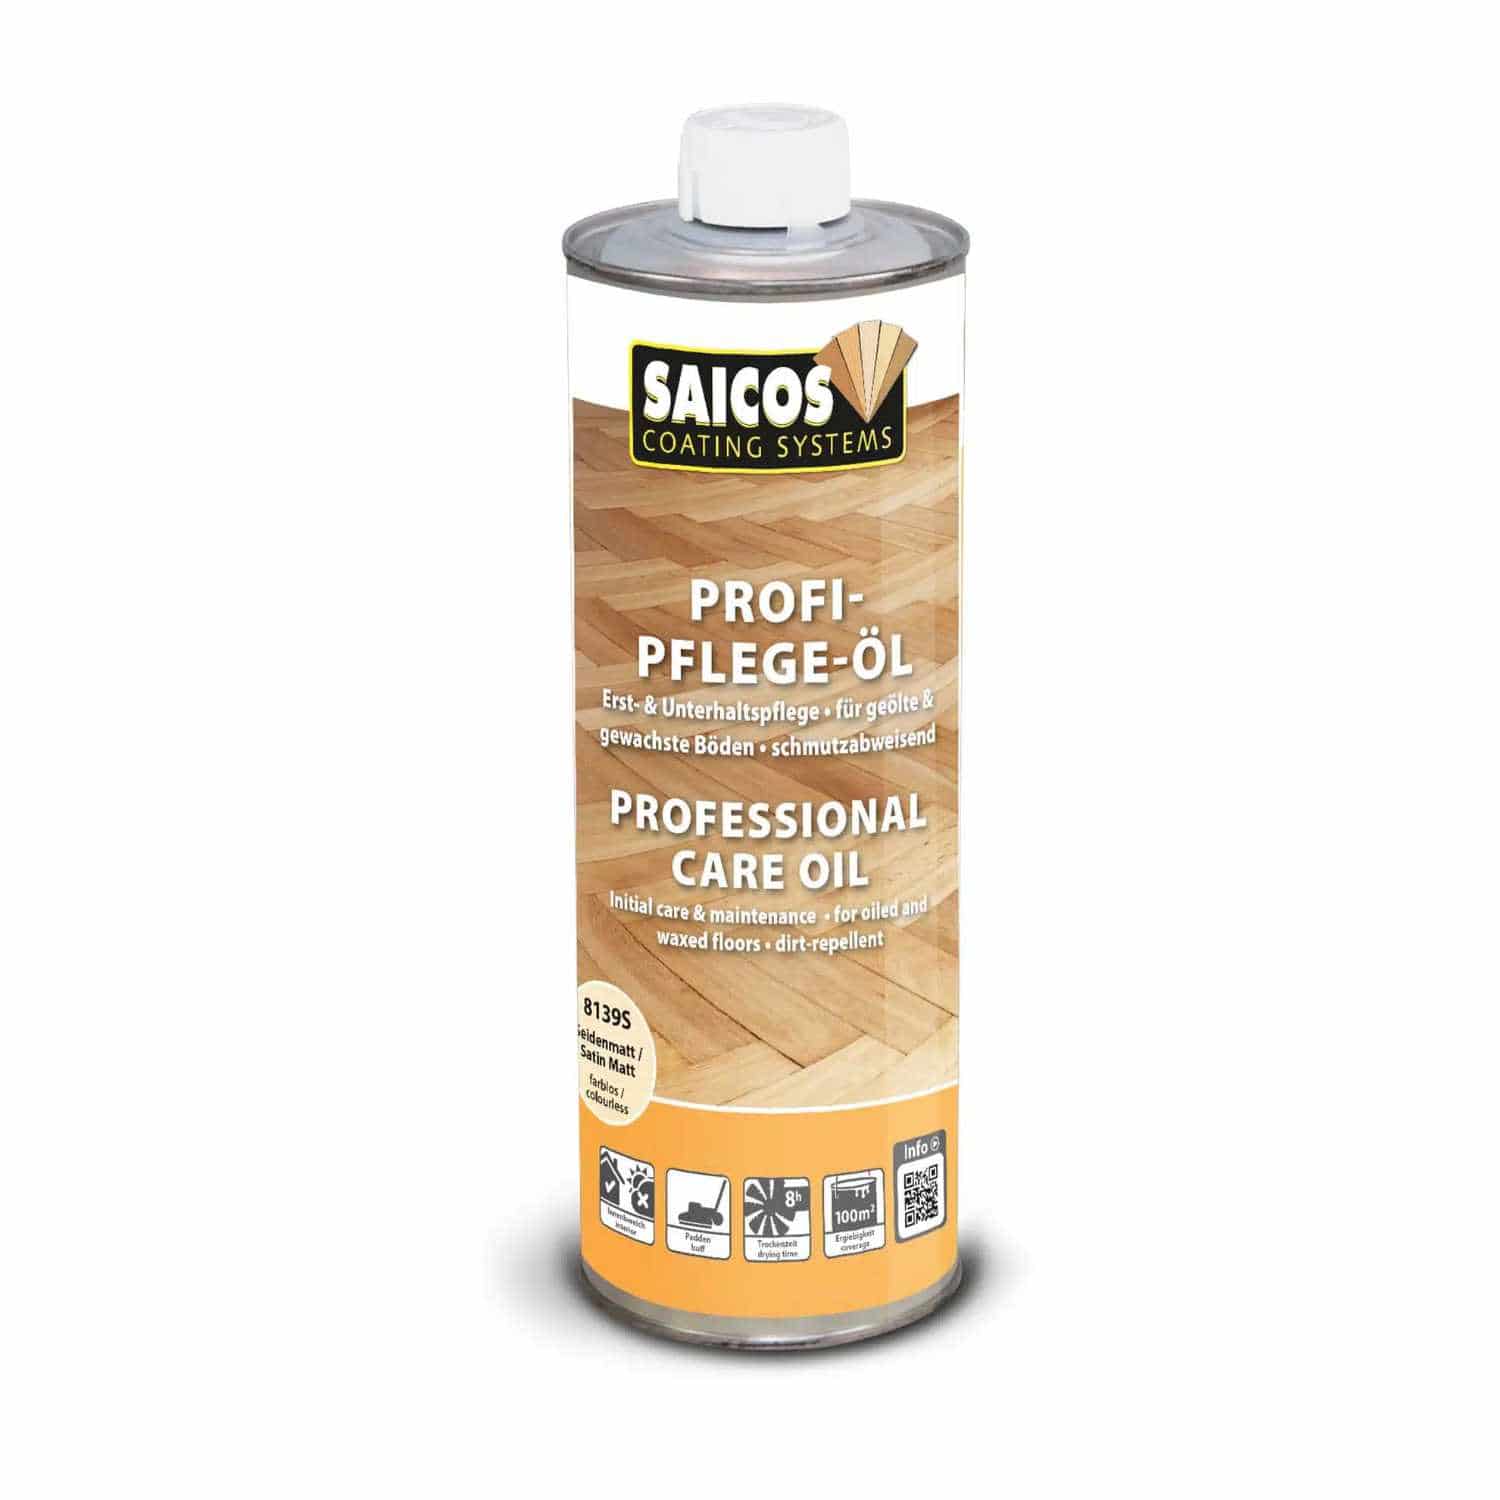 Saicos Profi-Pflege-Öl für geölte Oberflächen - 1 Liter